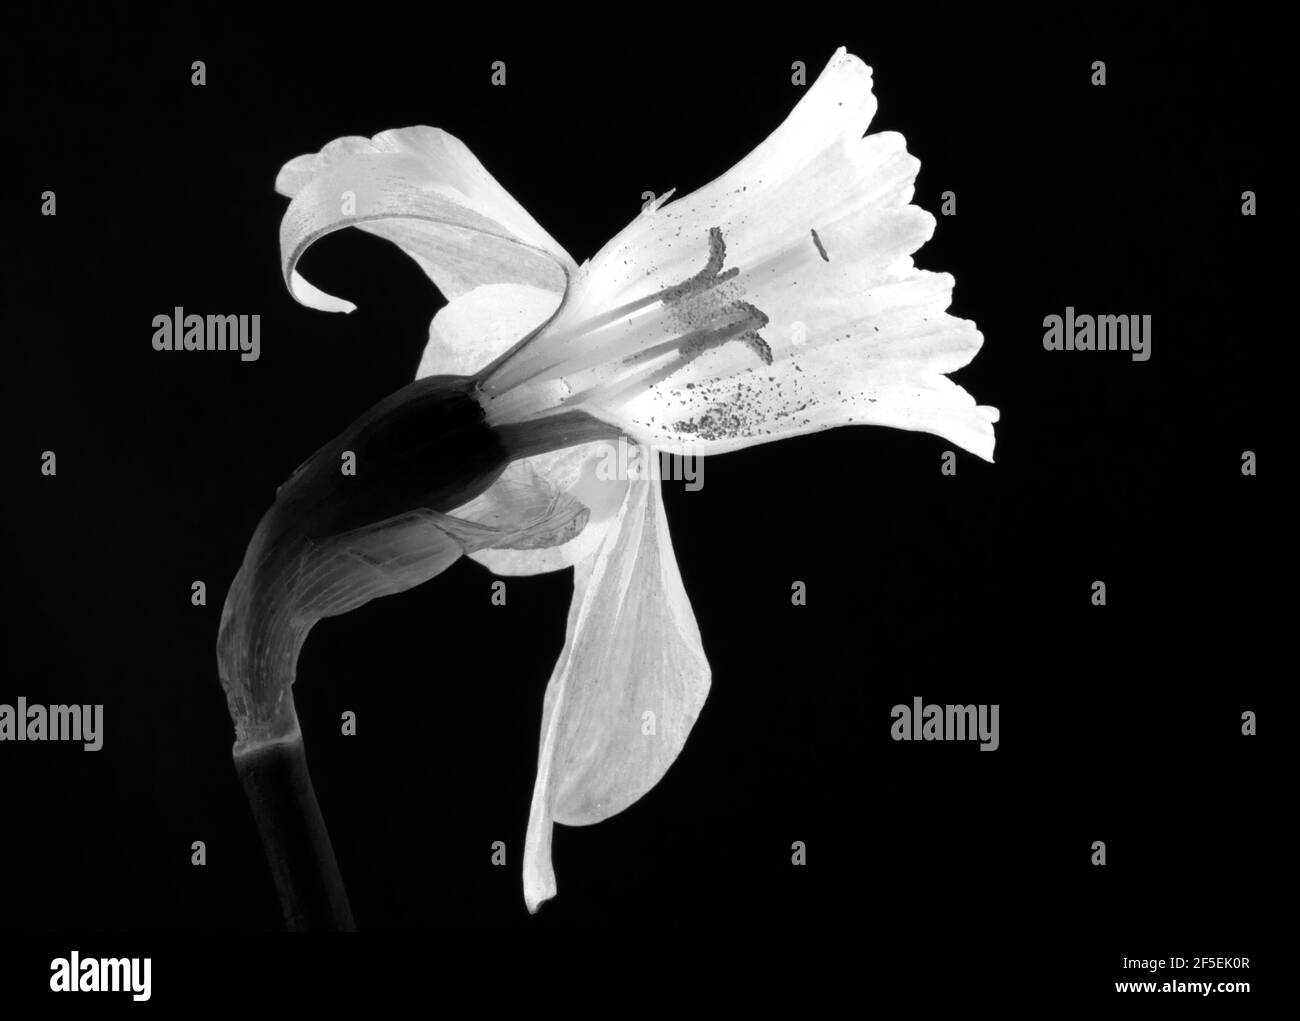 La structure interne en trompette de l'inflorescence de Daffodil protège les parties reproductrices de la fleur. Banque D'Images